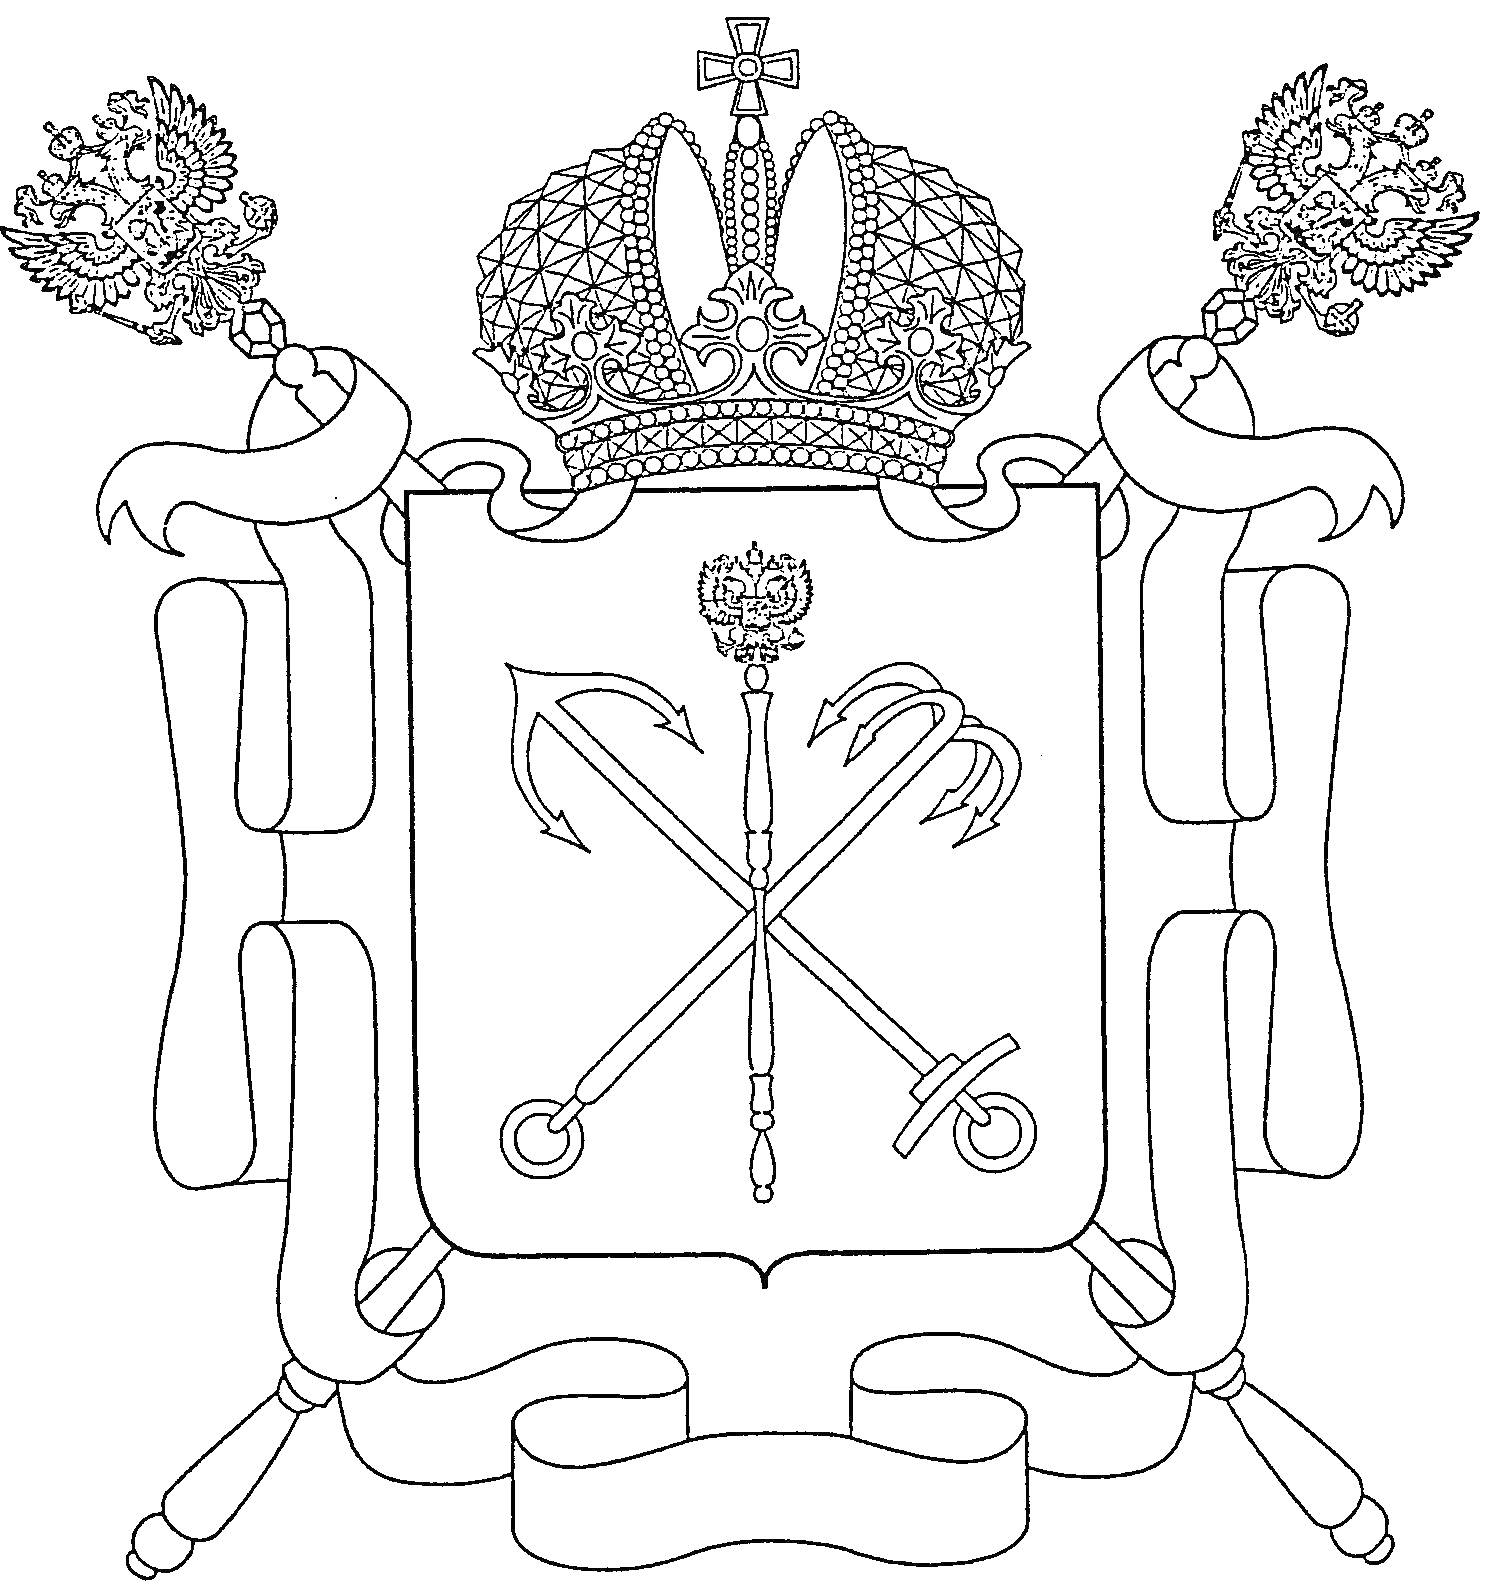 Герб России со скипетром, державой, короной и лентами